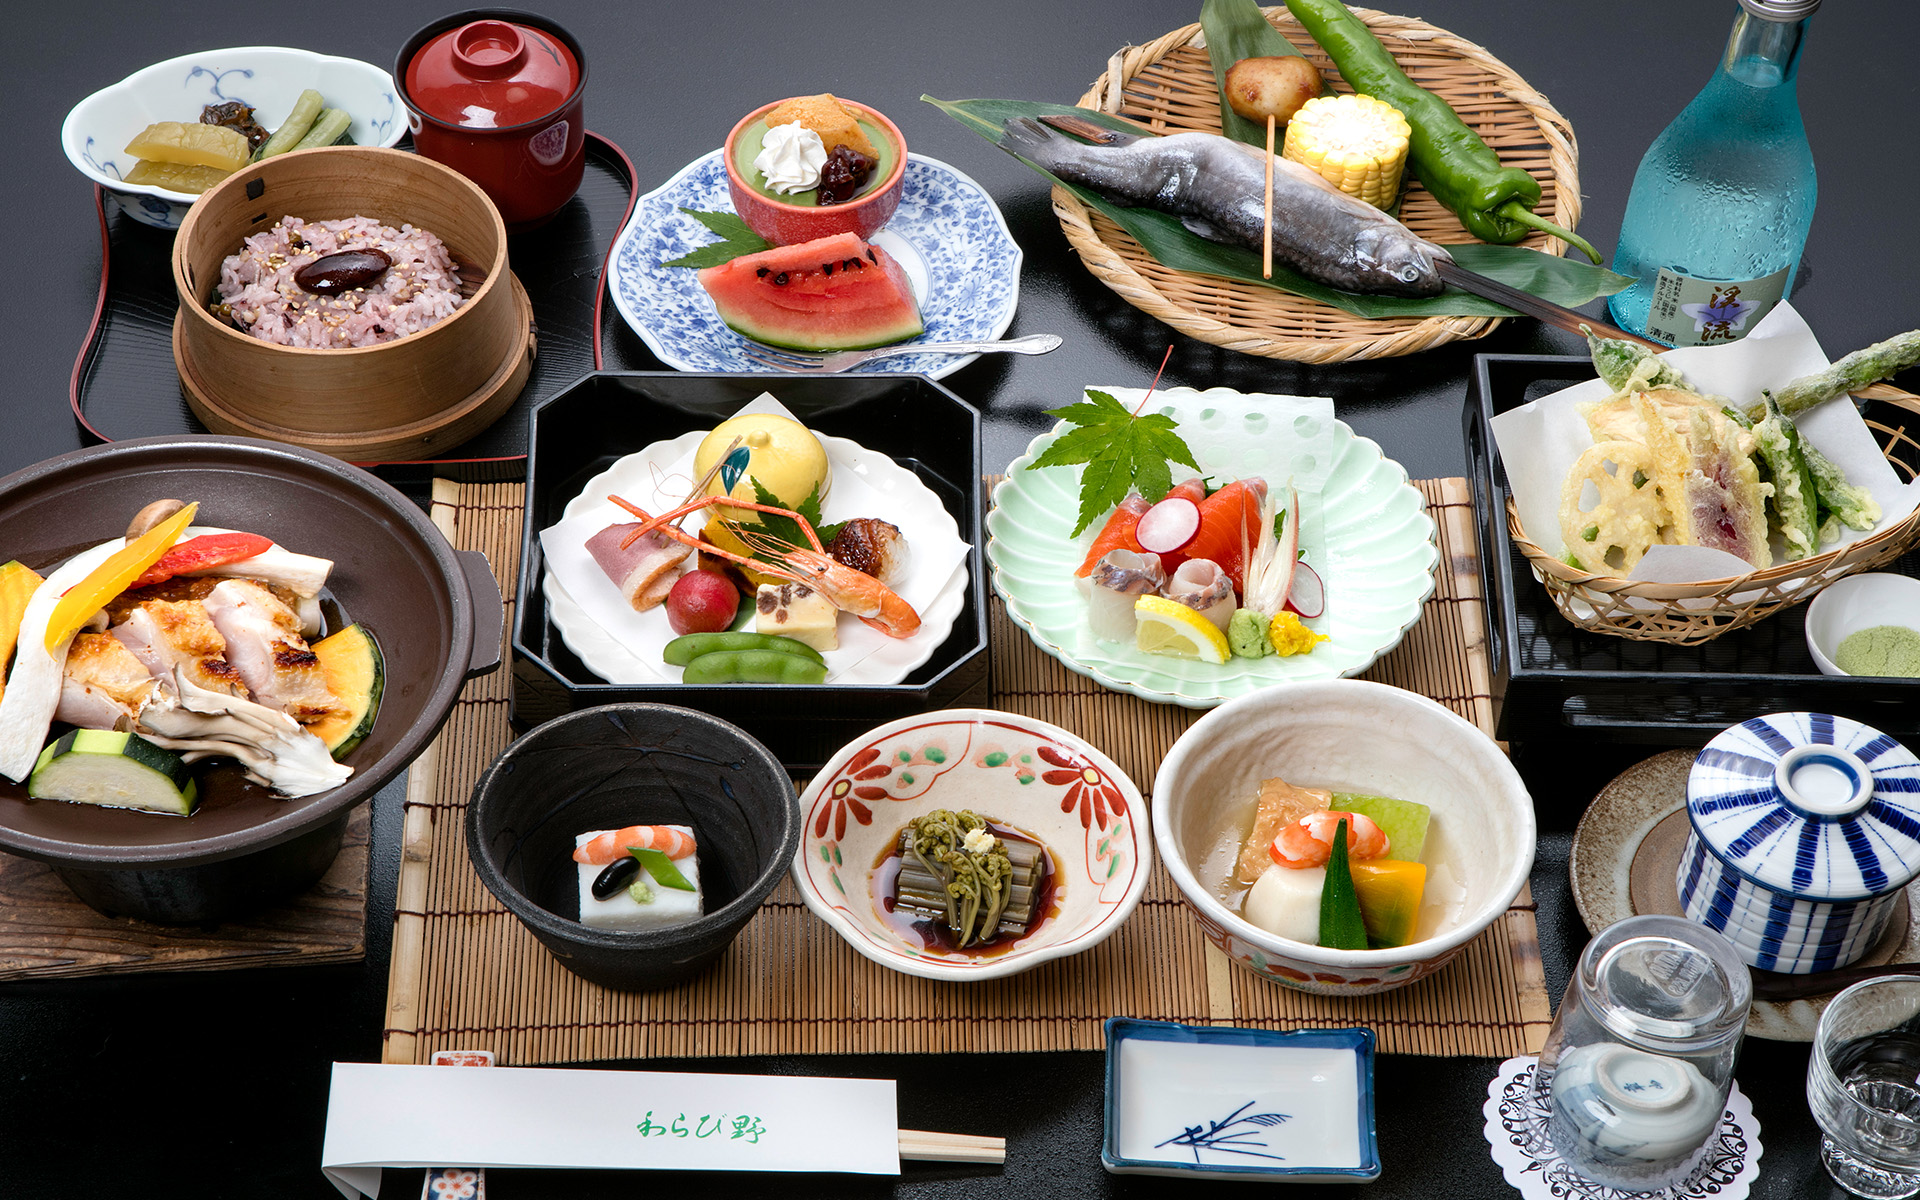 「長野」の食材と料理長の郷土「北海道」を 意識した純和風の正統派会席料理